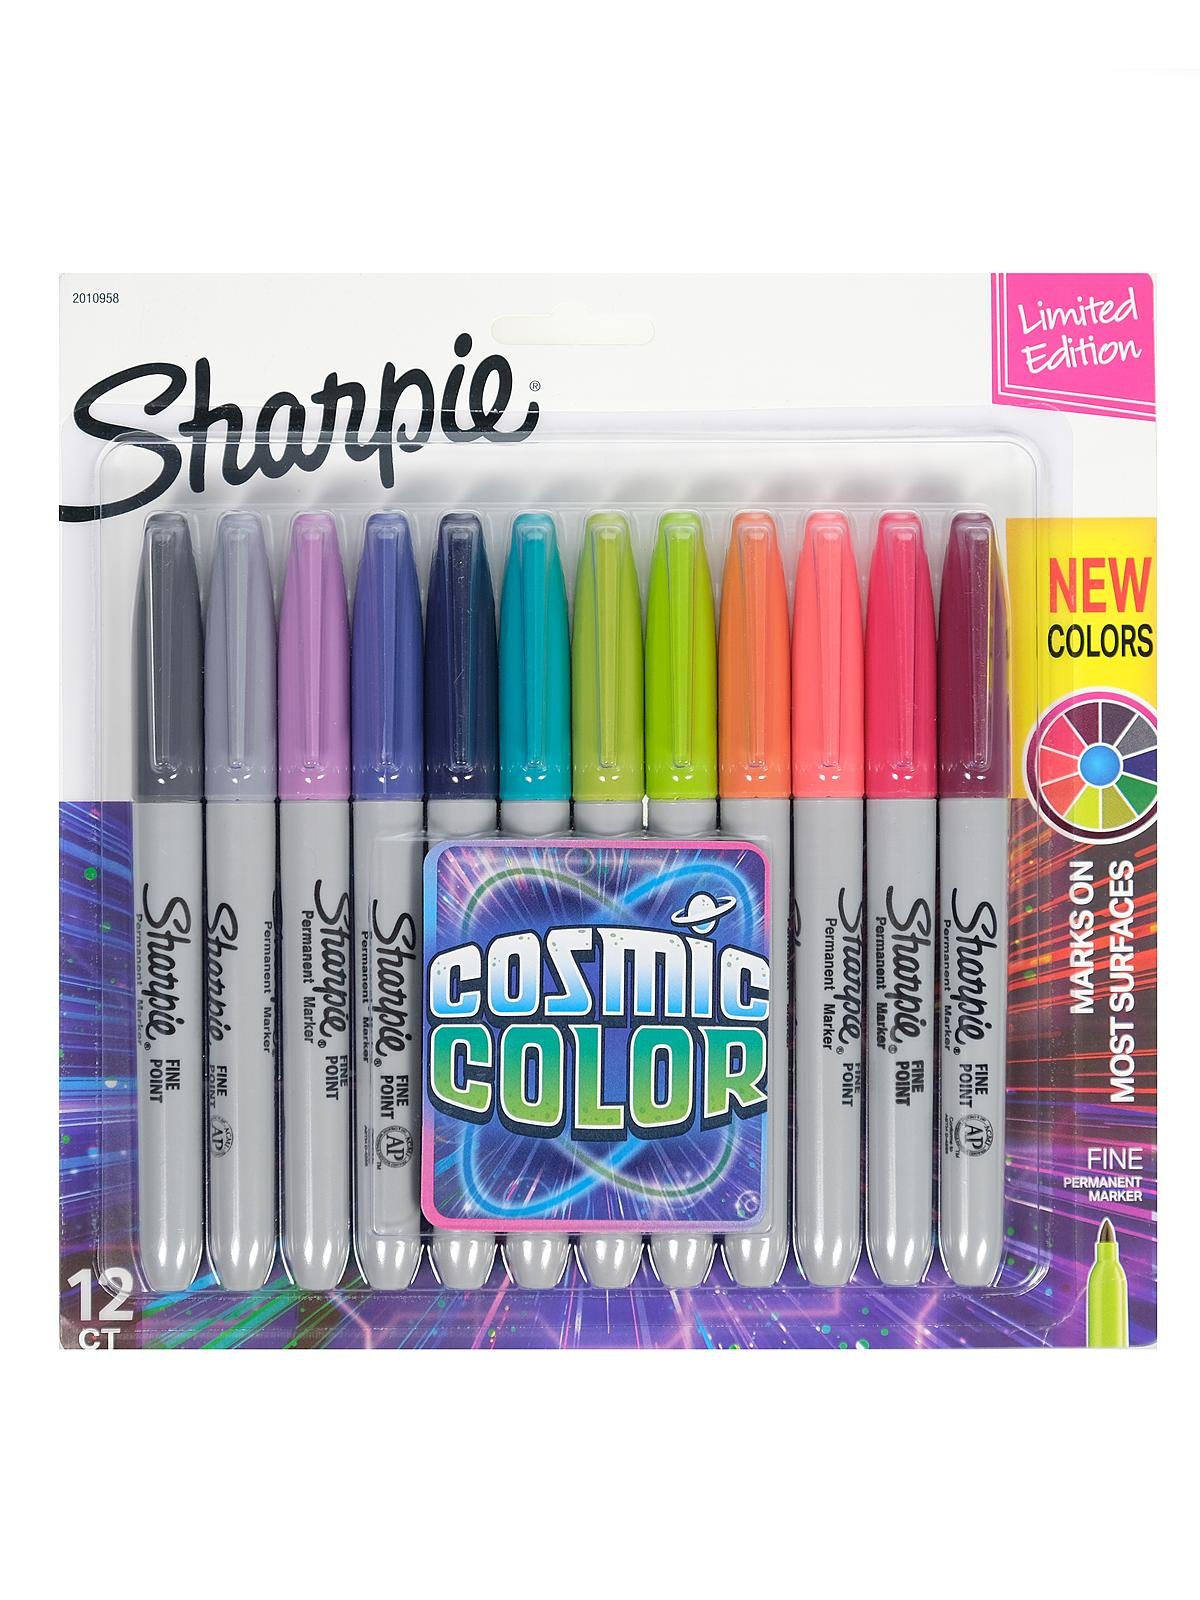 Sharpie - Cosmic Color